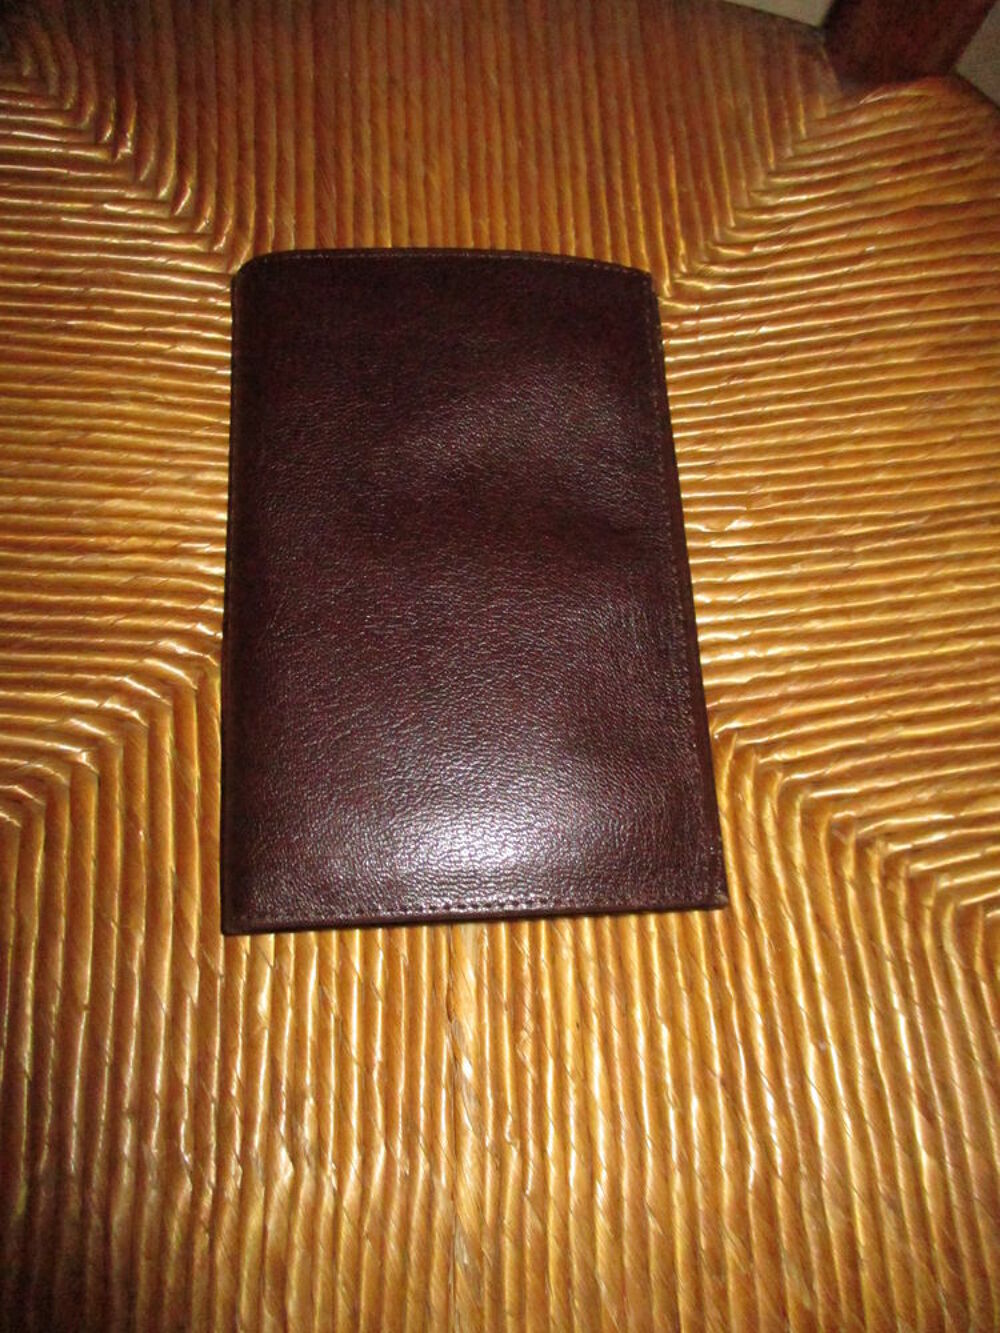 porte-feuilles en cuir marron (ancien permis de conduire) Maroquinerie